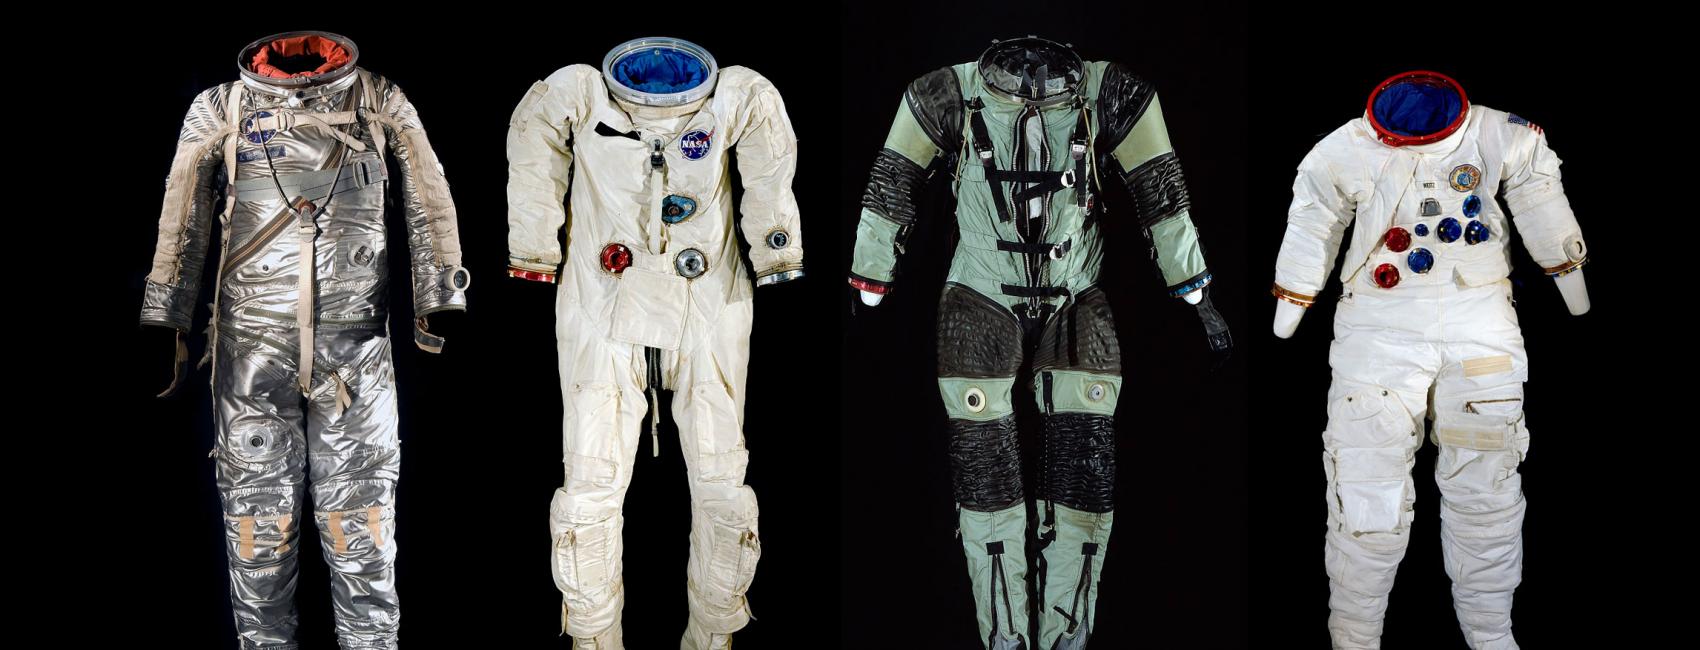 Astronaut Space Suit – Asylum Models & Effects Ltd.